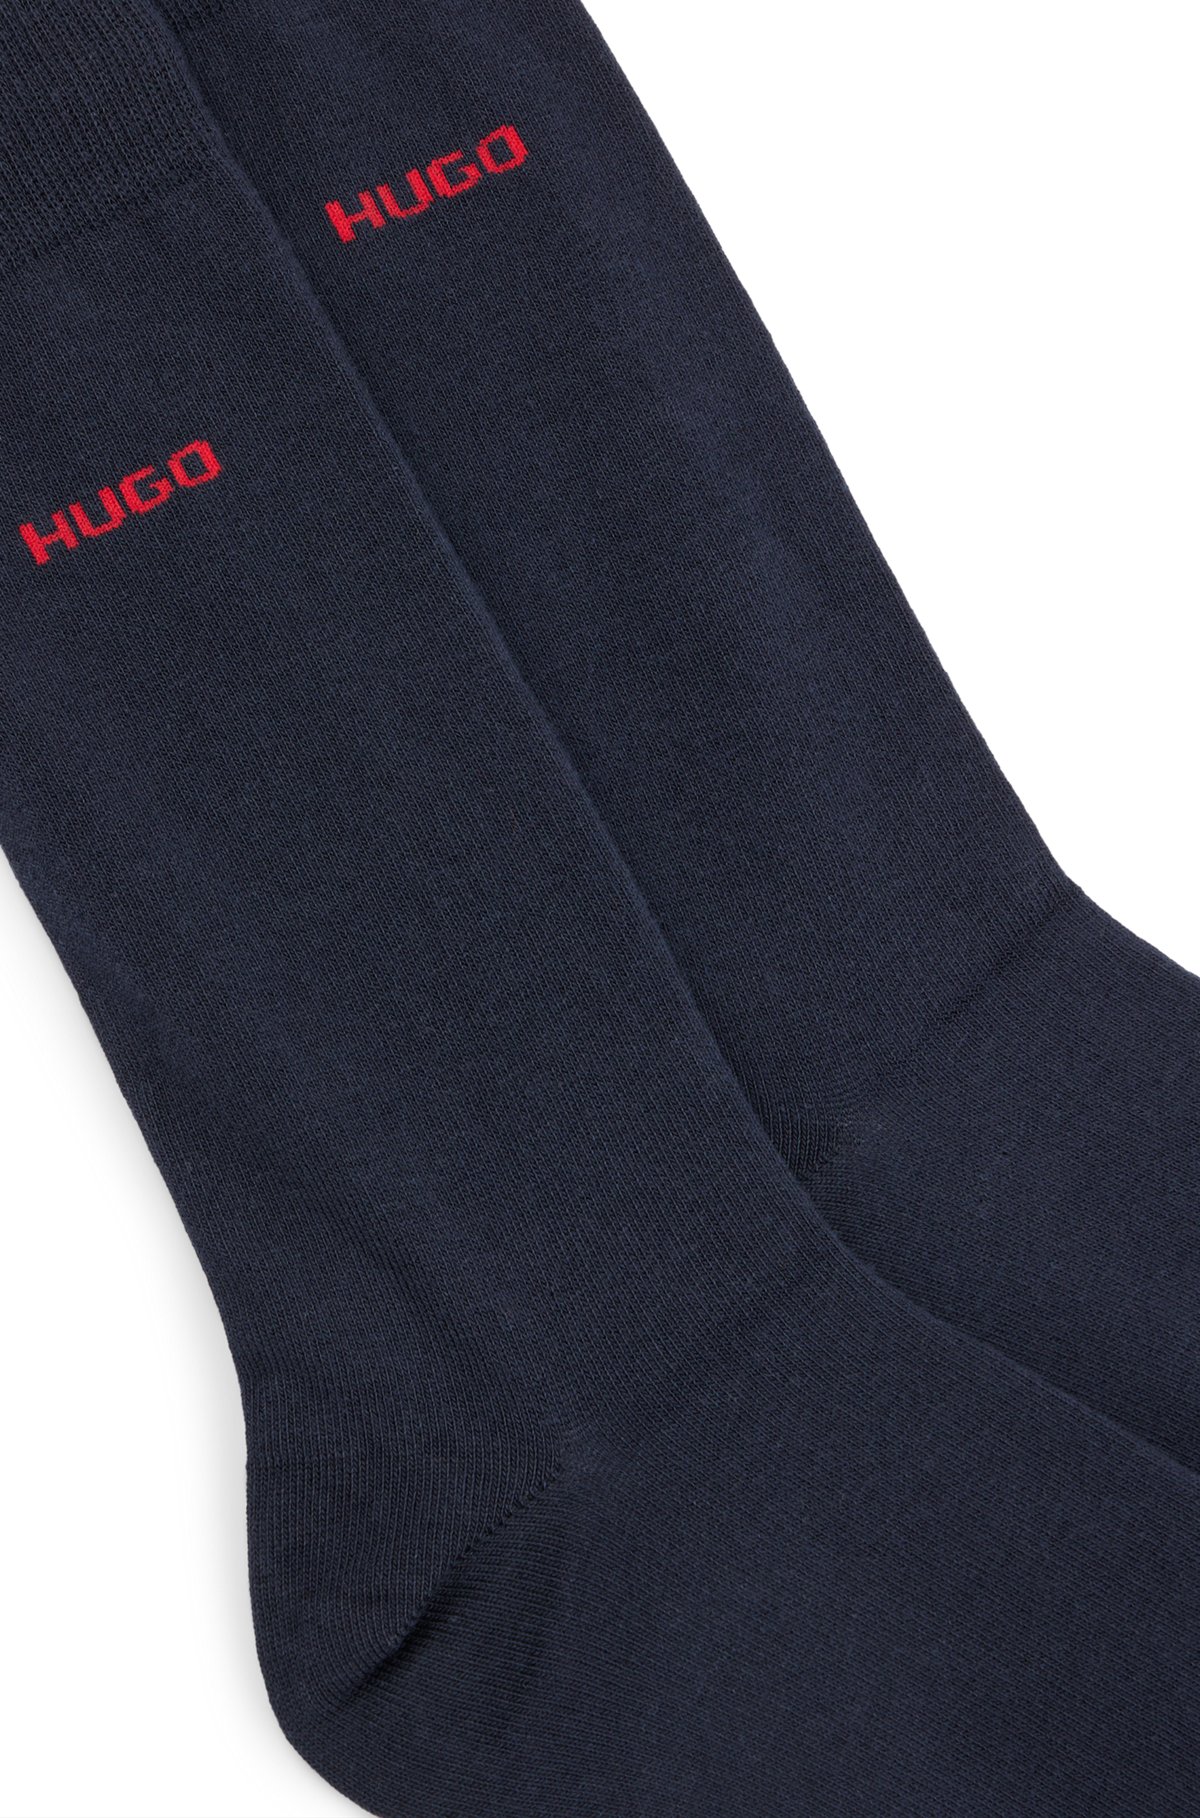 Paquete de dos pares de calcetines de largo normal en tejido elástico, Azul oscuro